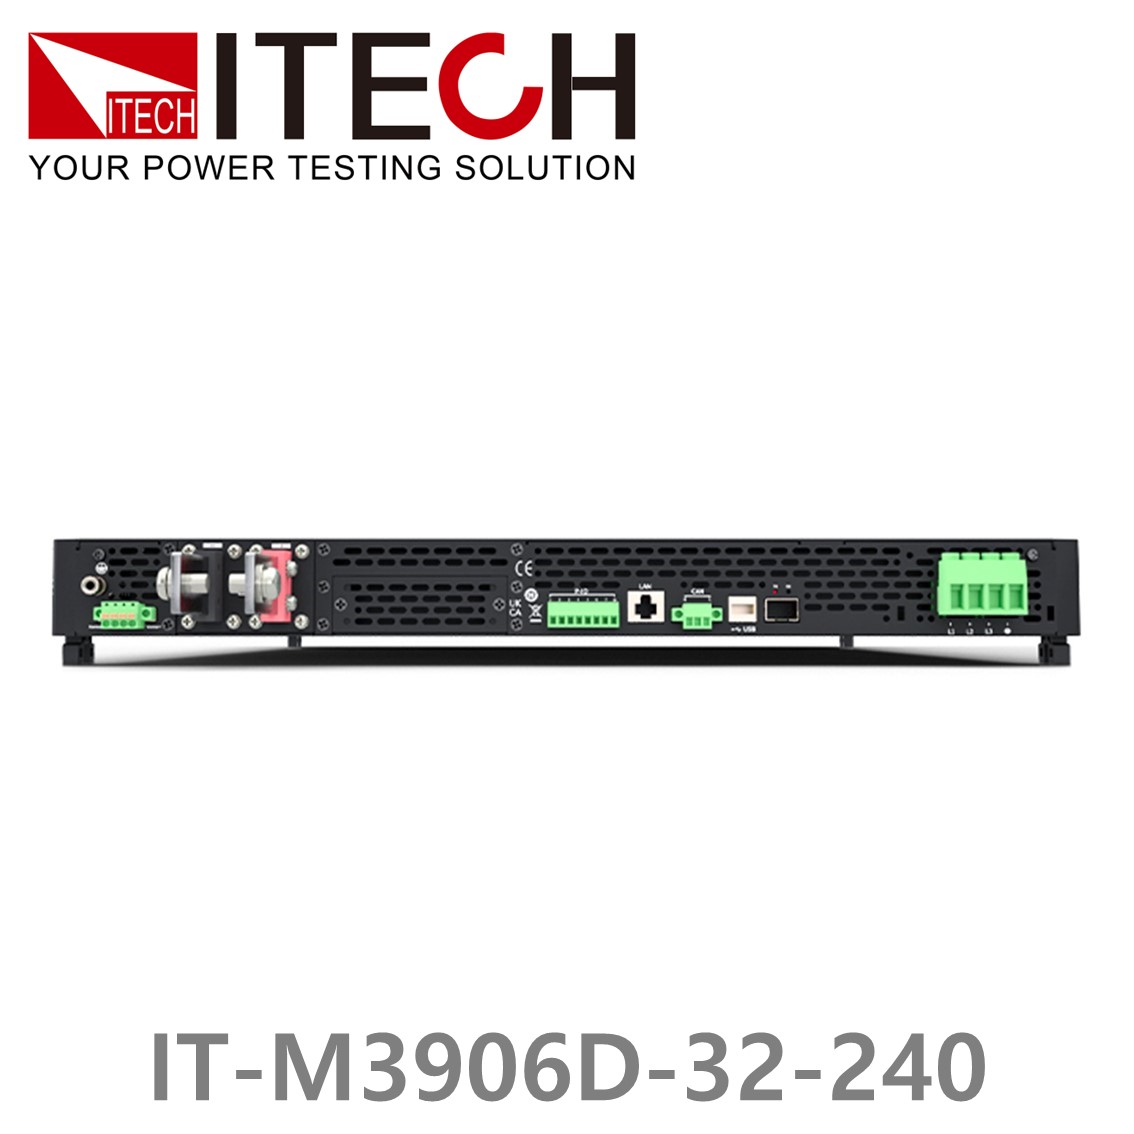 [ ITECH ] IT-M3906D-32-240 양방향 프로그래머블 DC전원공급기, DC파워서플라이